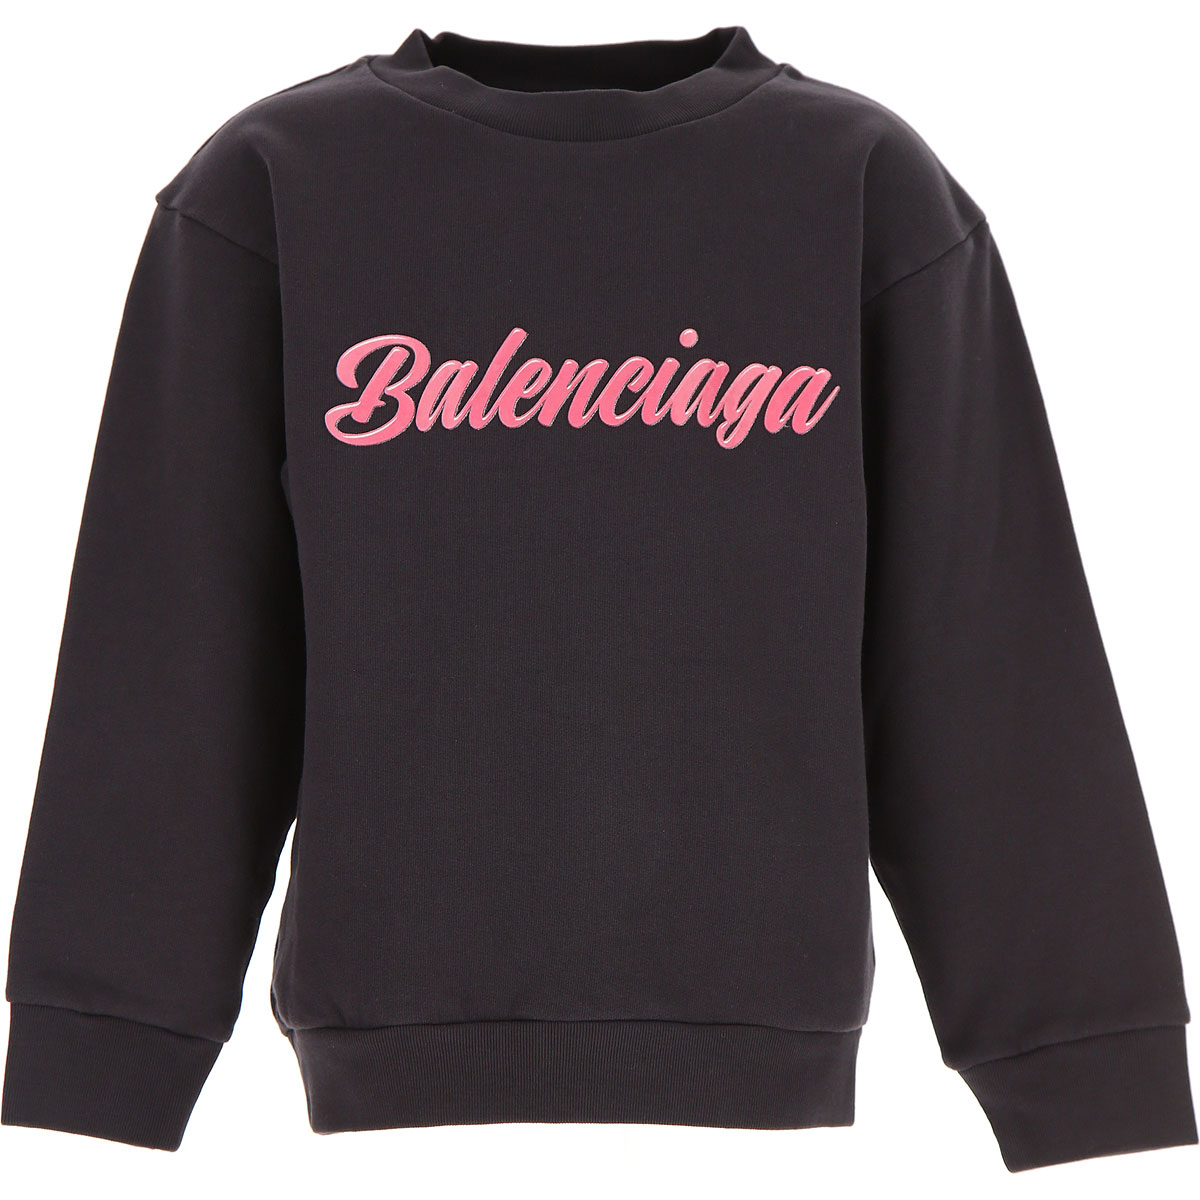 Balenciaga Kinder Sweatshirt & Kapuzenpullover für Jungen Günstig im Sale, Schwarz, Baumwolle, 2017, 10Y 2Y 6Y 8Y